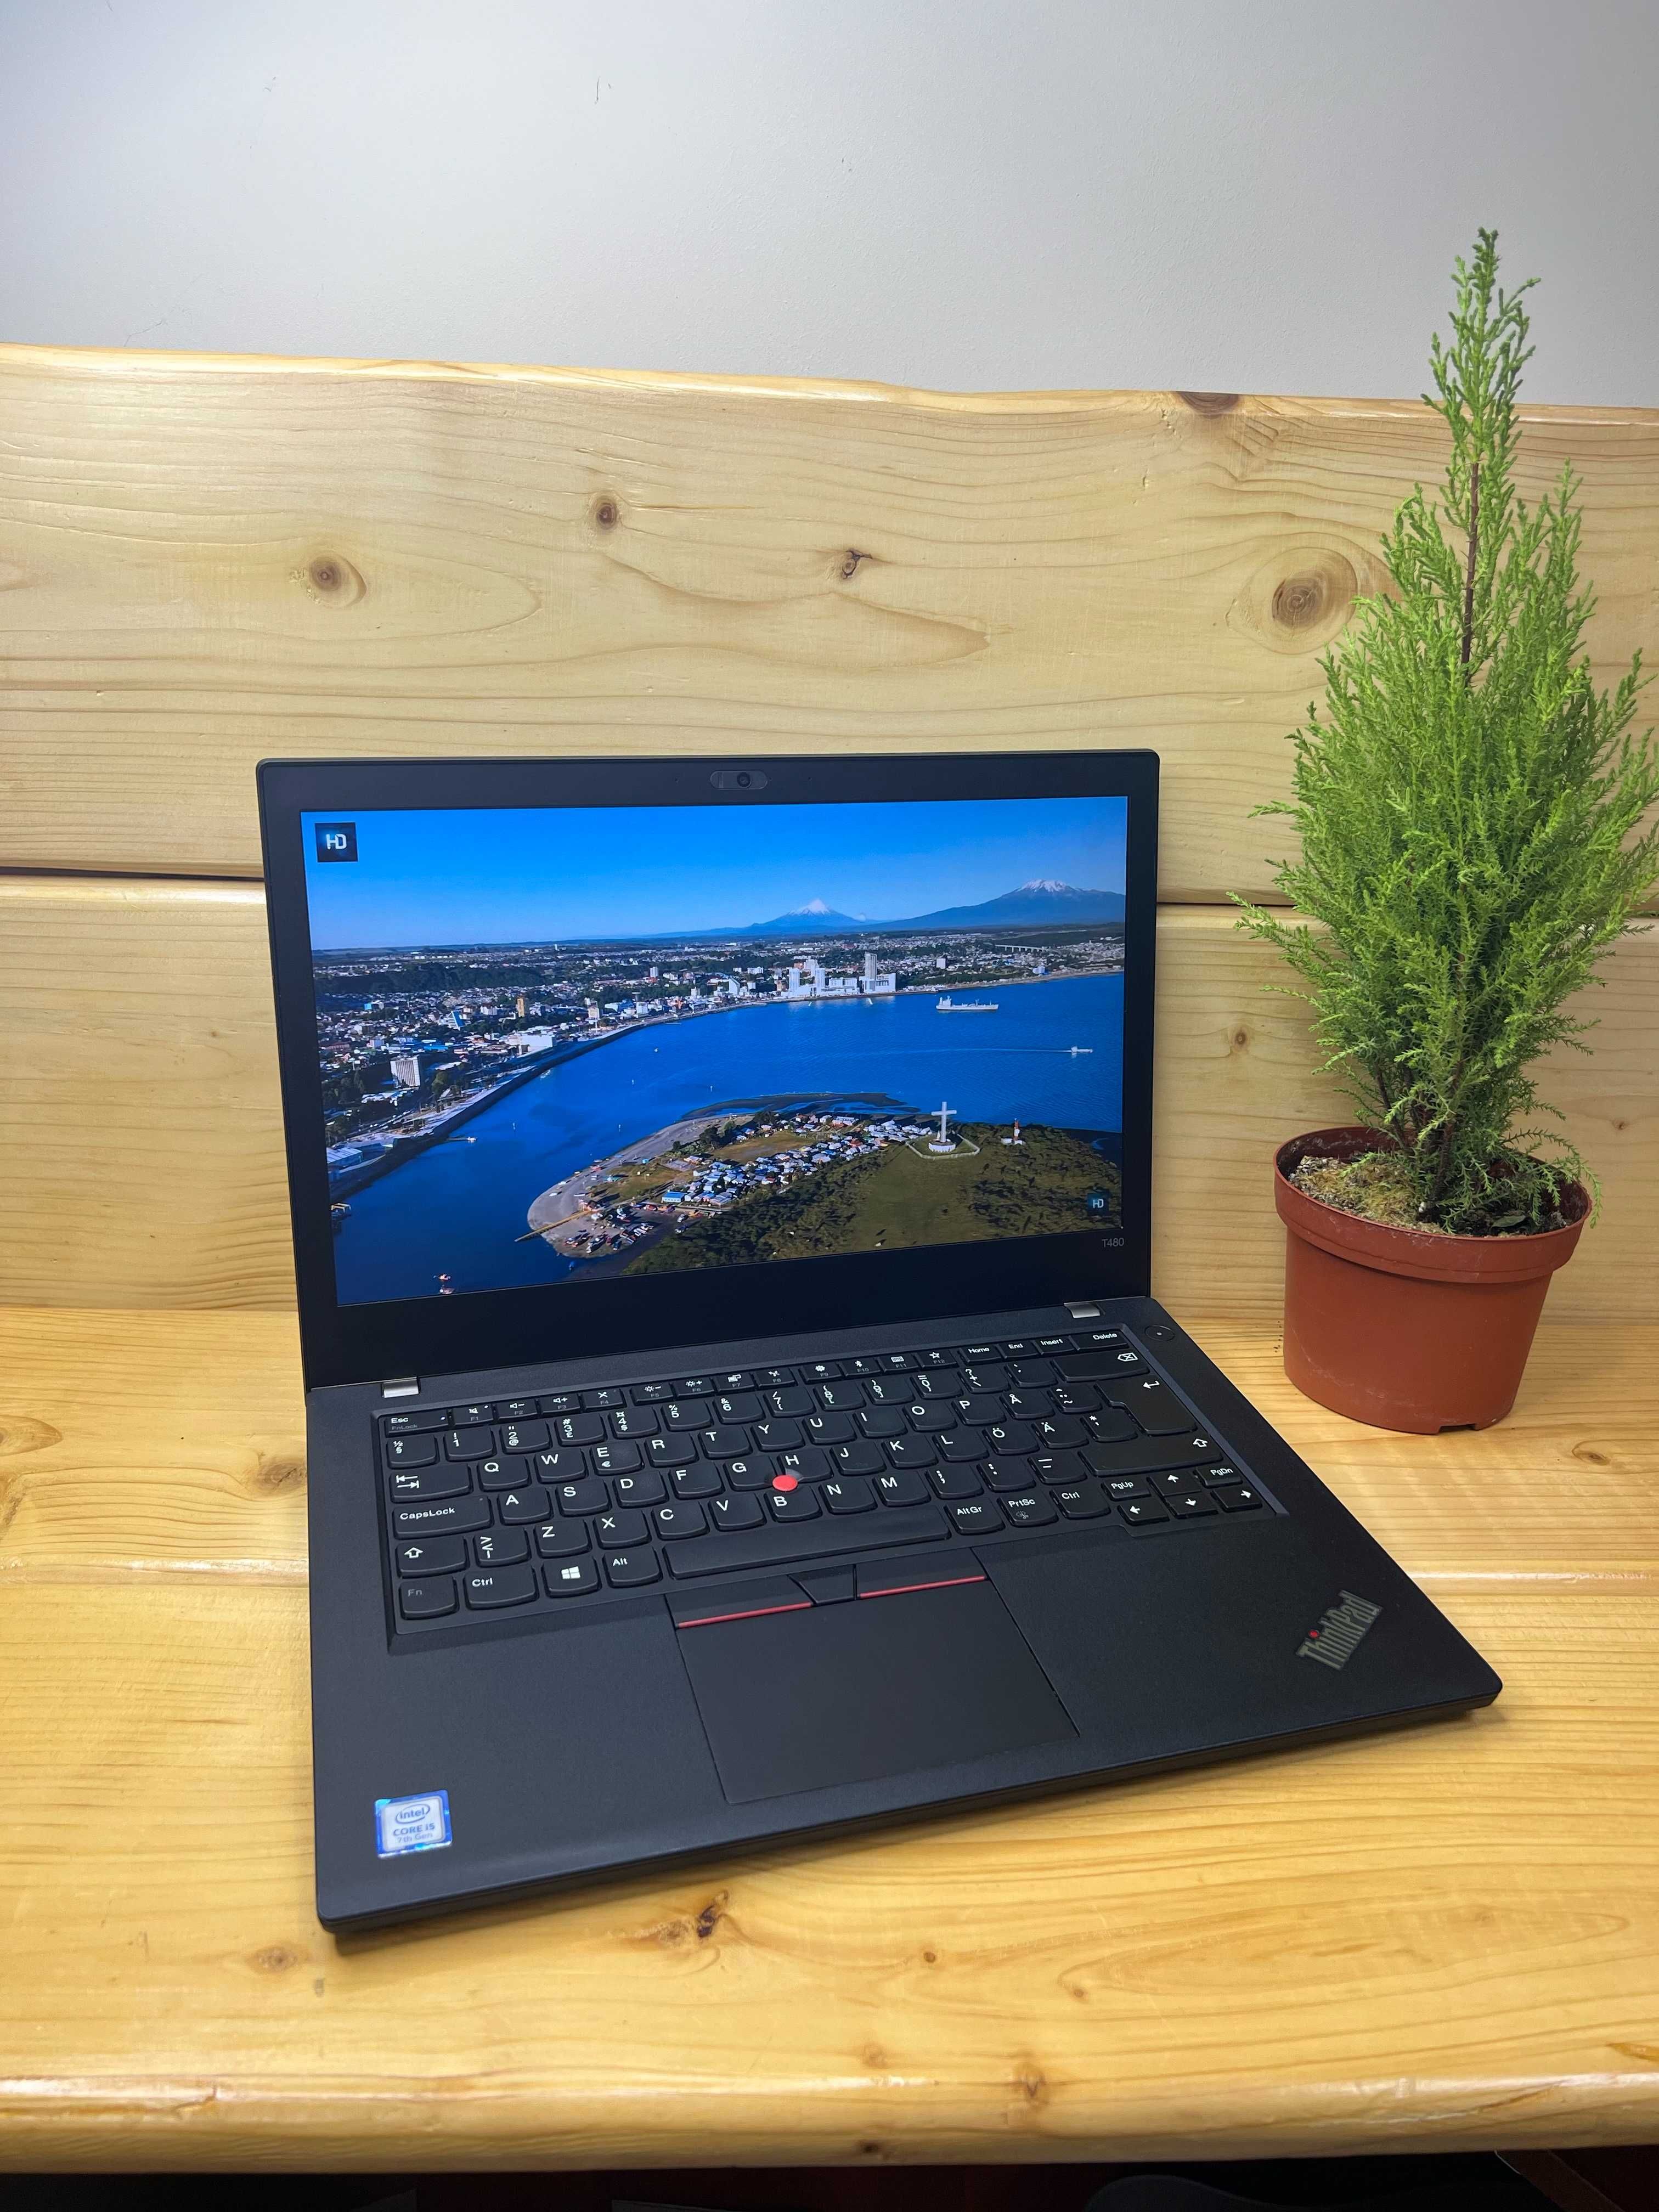 ОПТ/РОЗДРІБ Ноутбук Lenovo ThinkPad T480/i5-7200U/8/256/IPS гарантія